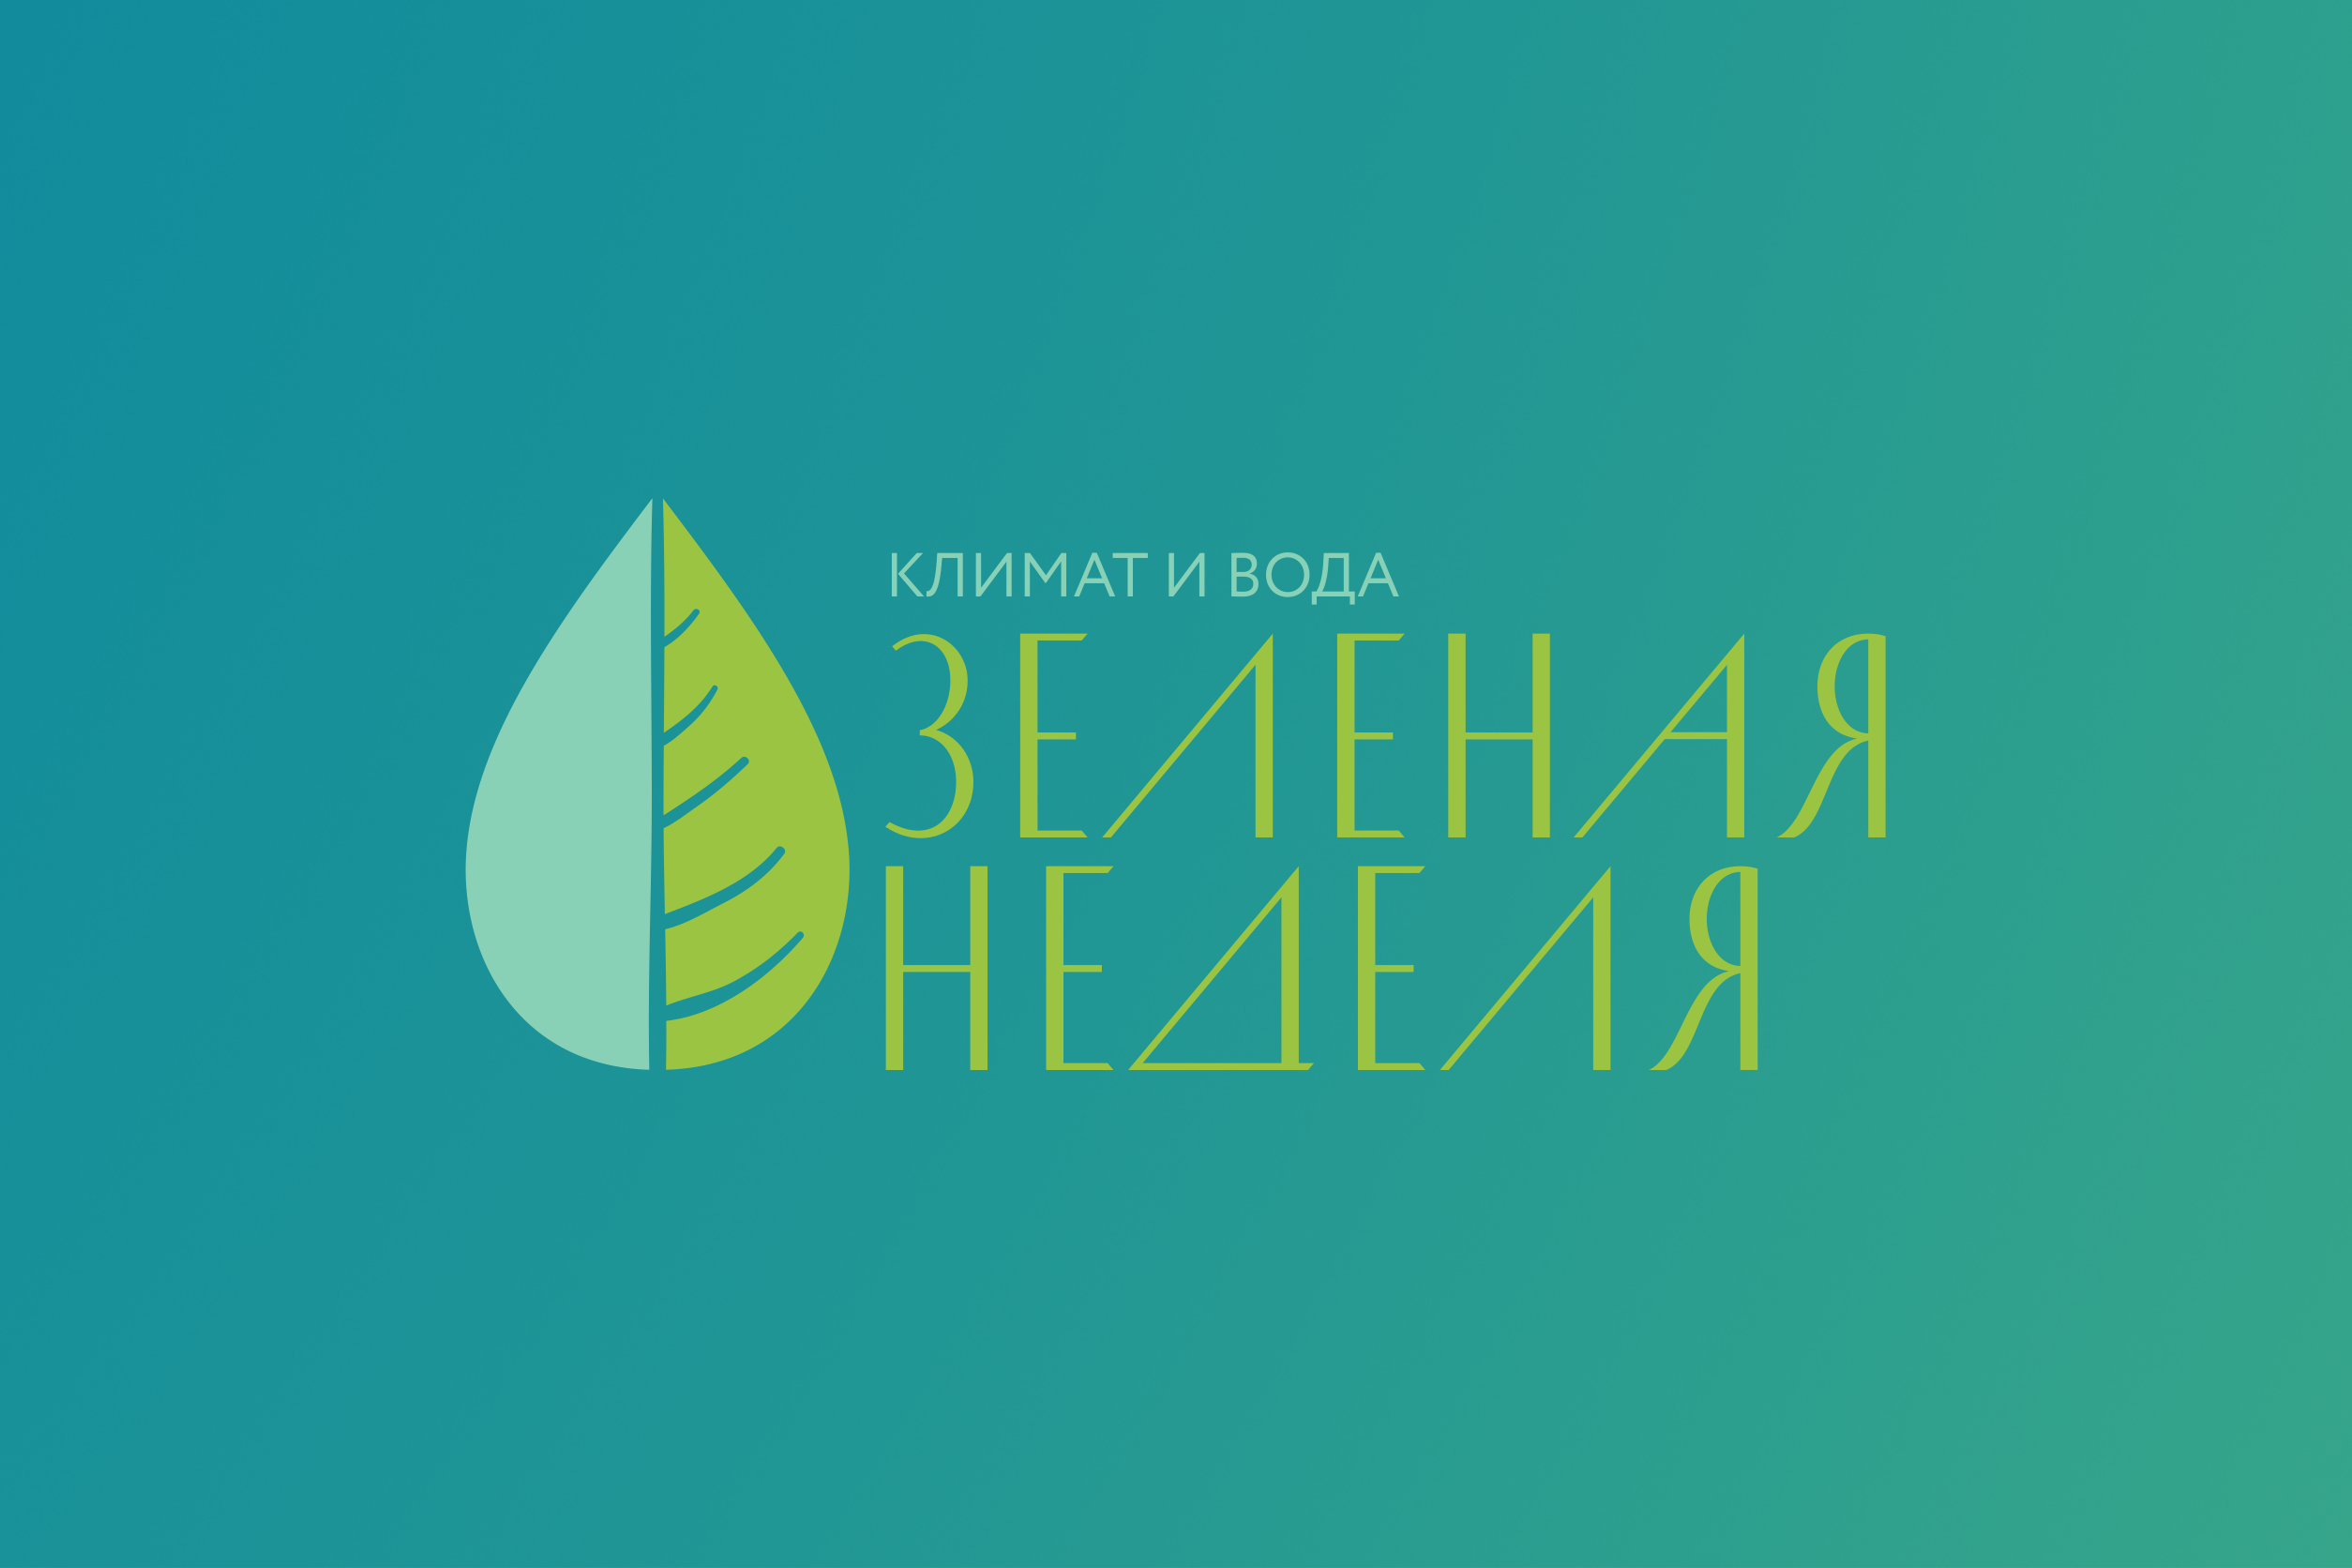 Мининский примет участие в фестивале «Зеленая неделя. Климат и вода» 